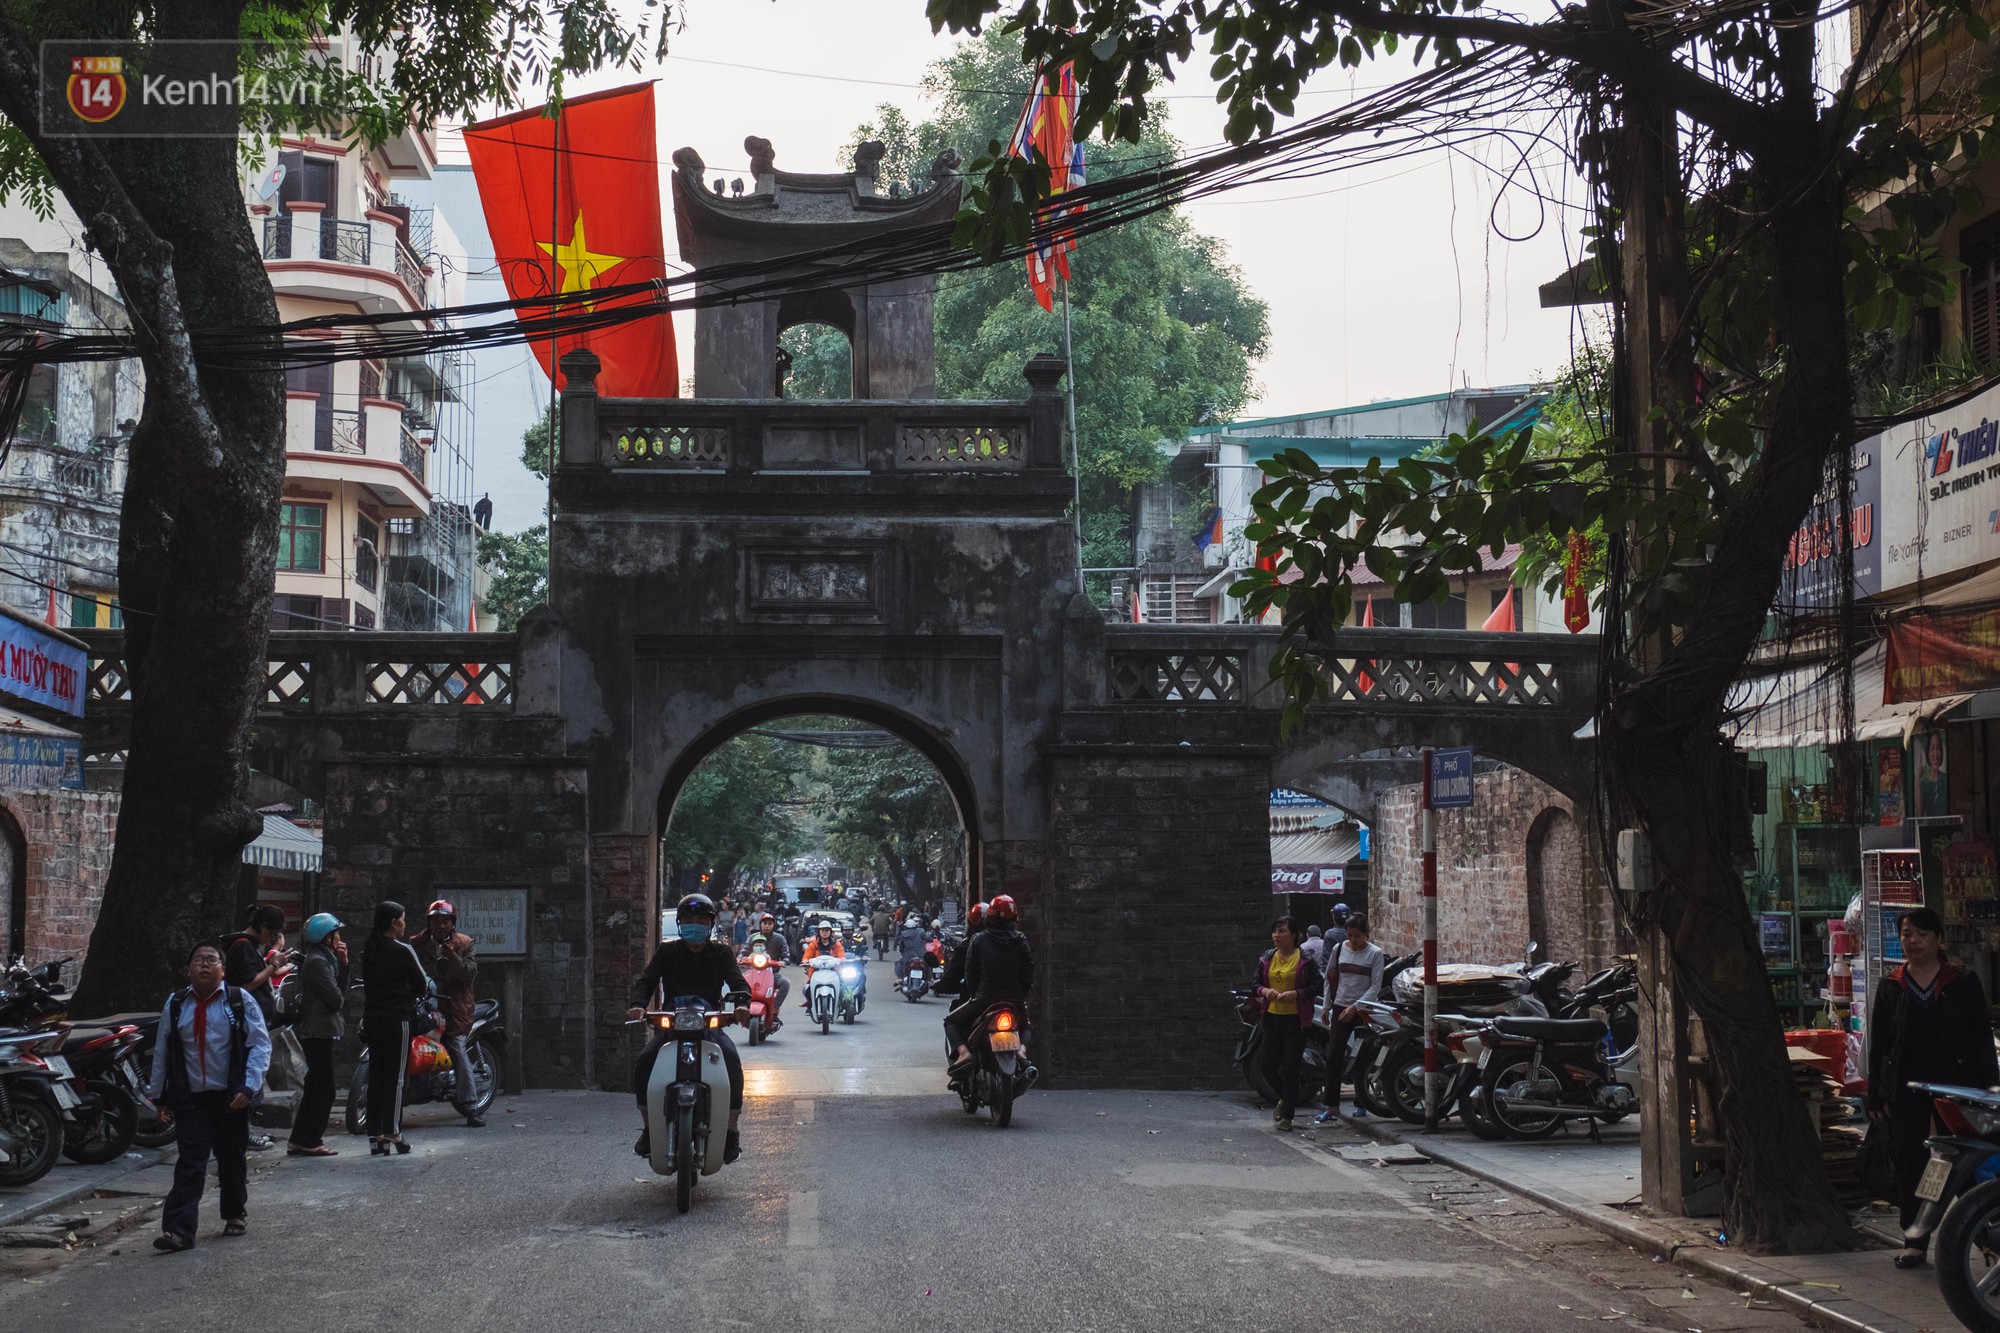 Chuyện người đàn ông ở Hà Nội 20 năm canh giữ cửa ô duy nhất còn lại của kinh thành Thăng Long xưa - Ảnh 11.